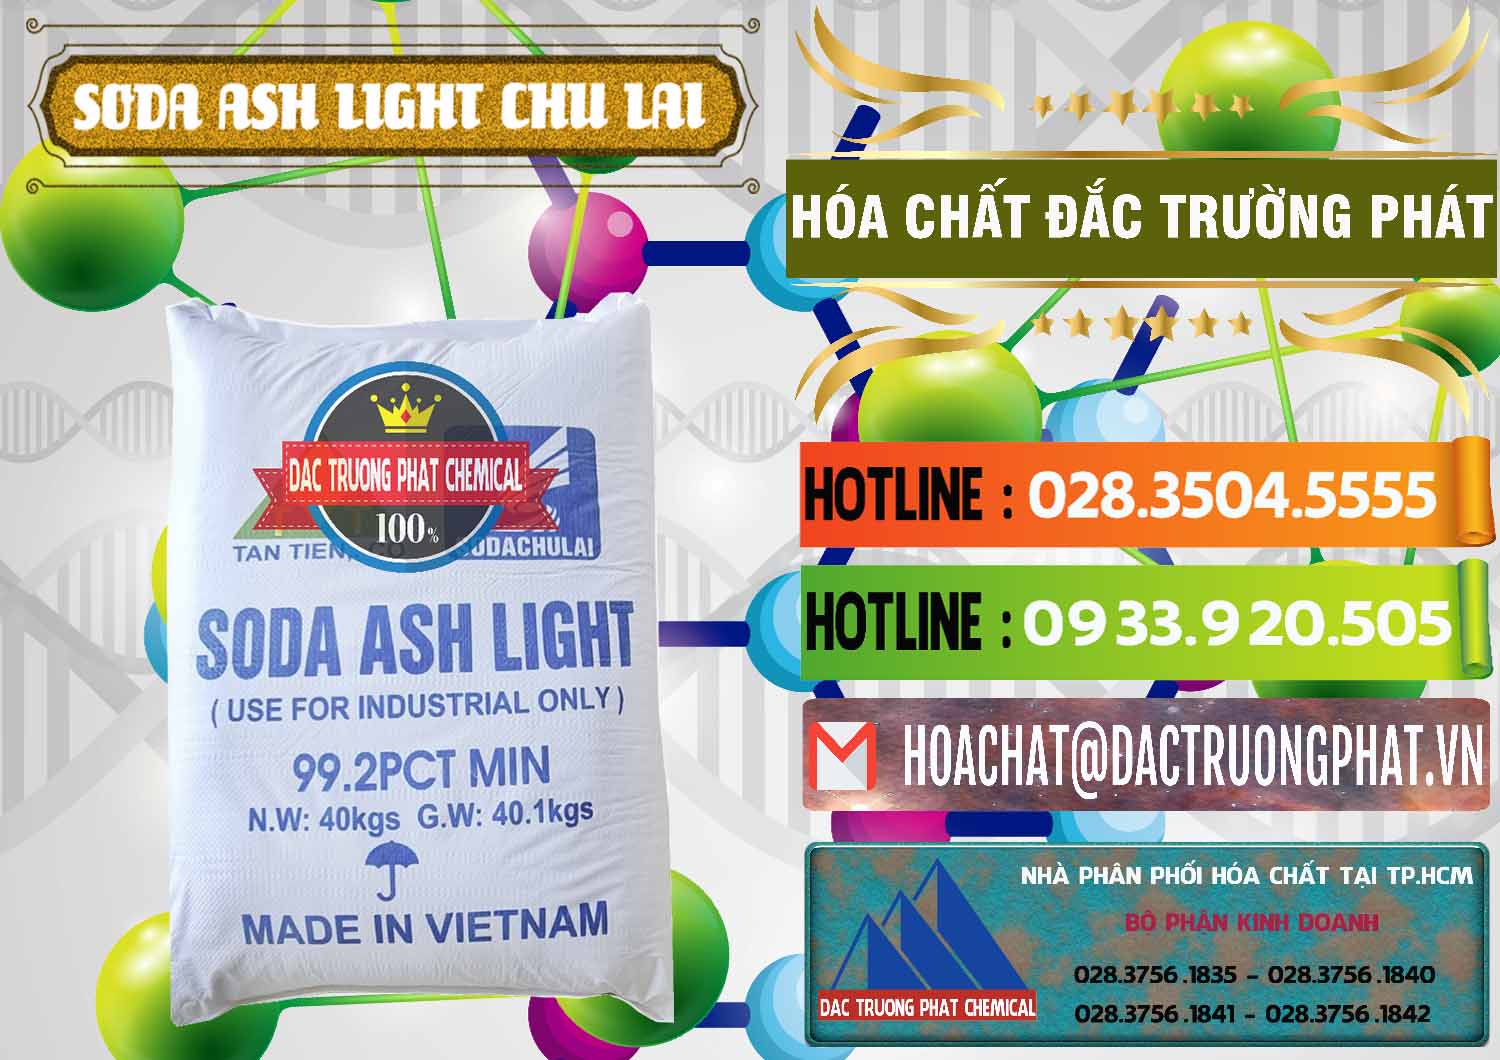 Công ty bán và phân phối Soda Ash Light - NA2CO3 Chu Lai Việt Nam - 0489 - Đơn vị bán - phân phối hóa chất tại TP.HCM - cungcaphoachat.com.vn